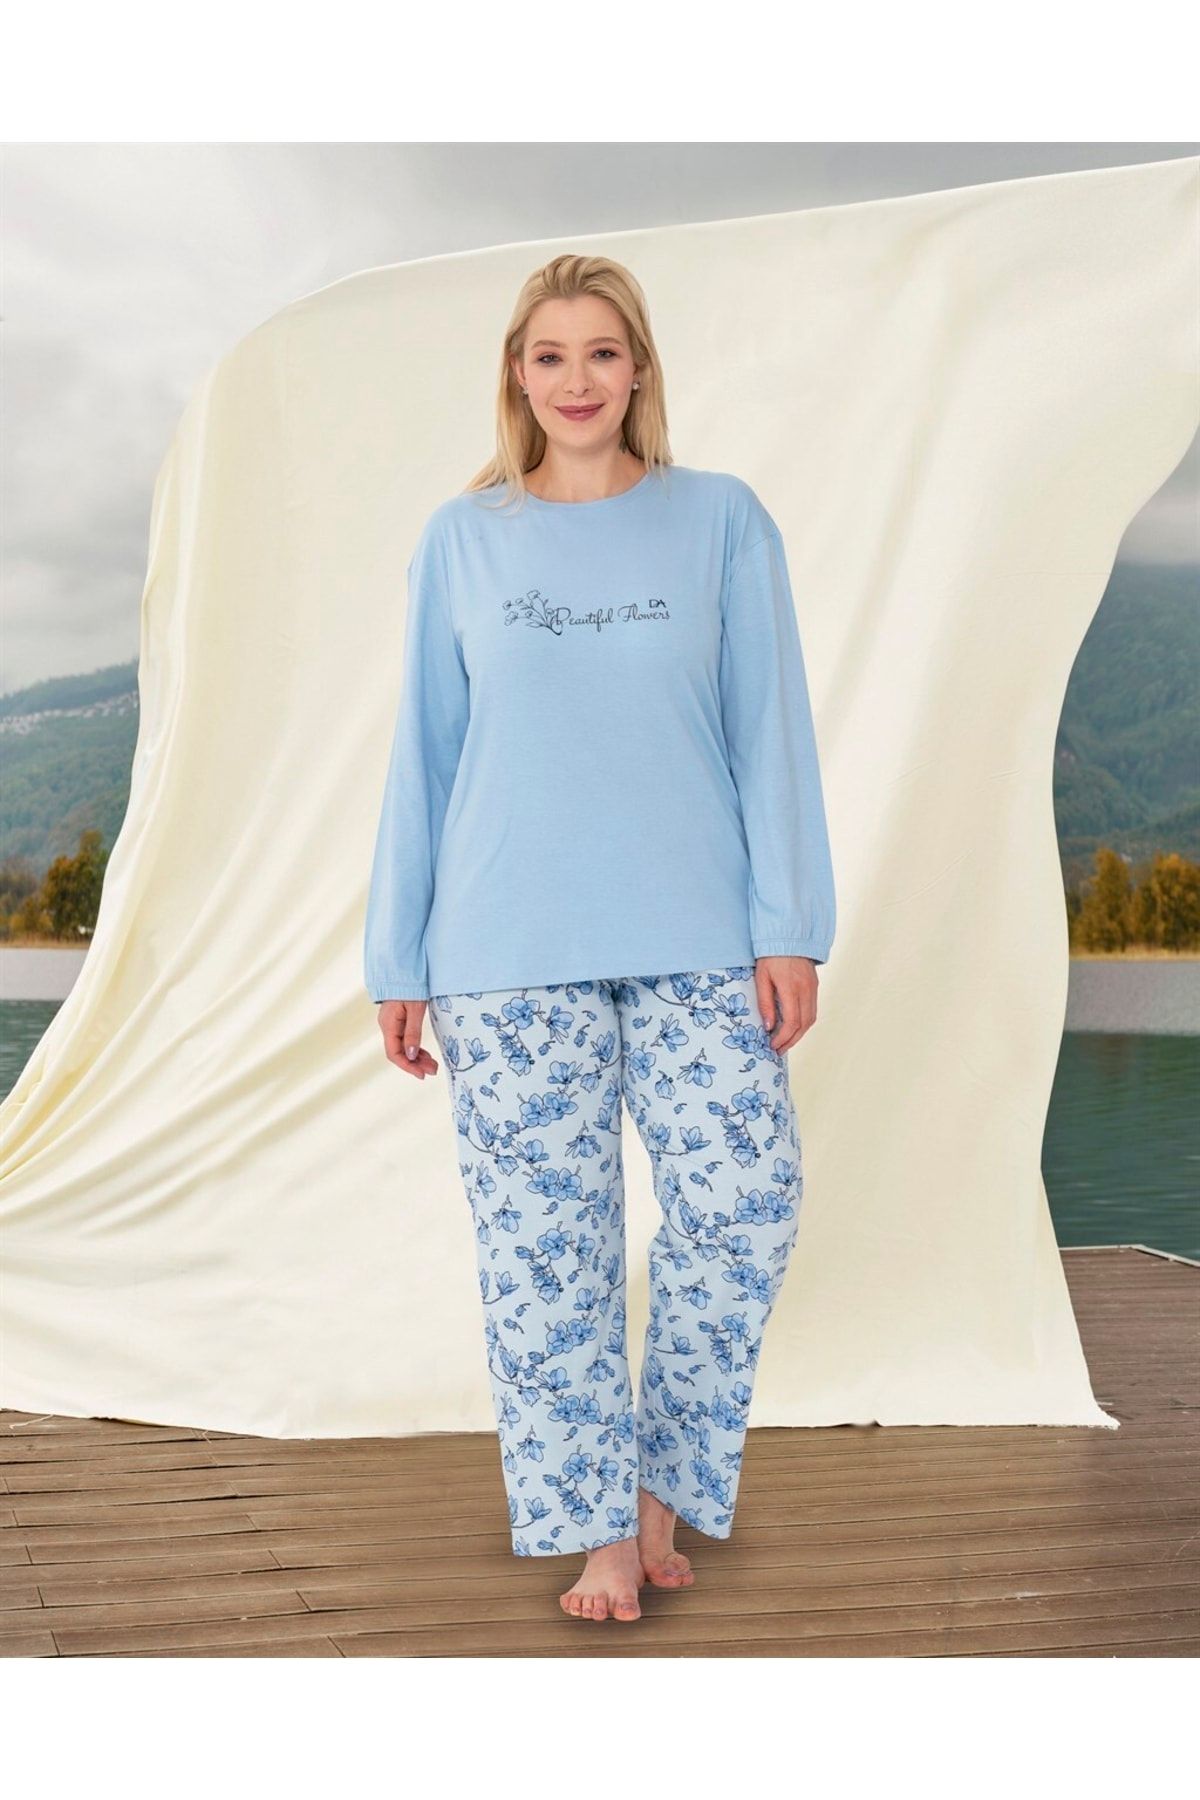 Doreanse Kadın Büyük Beden Mavi Yazı Baskılı Çiçek Desenli Uzun Kol T-shirt Pijama Takımı